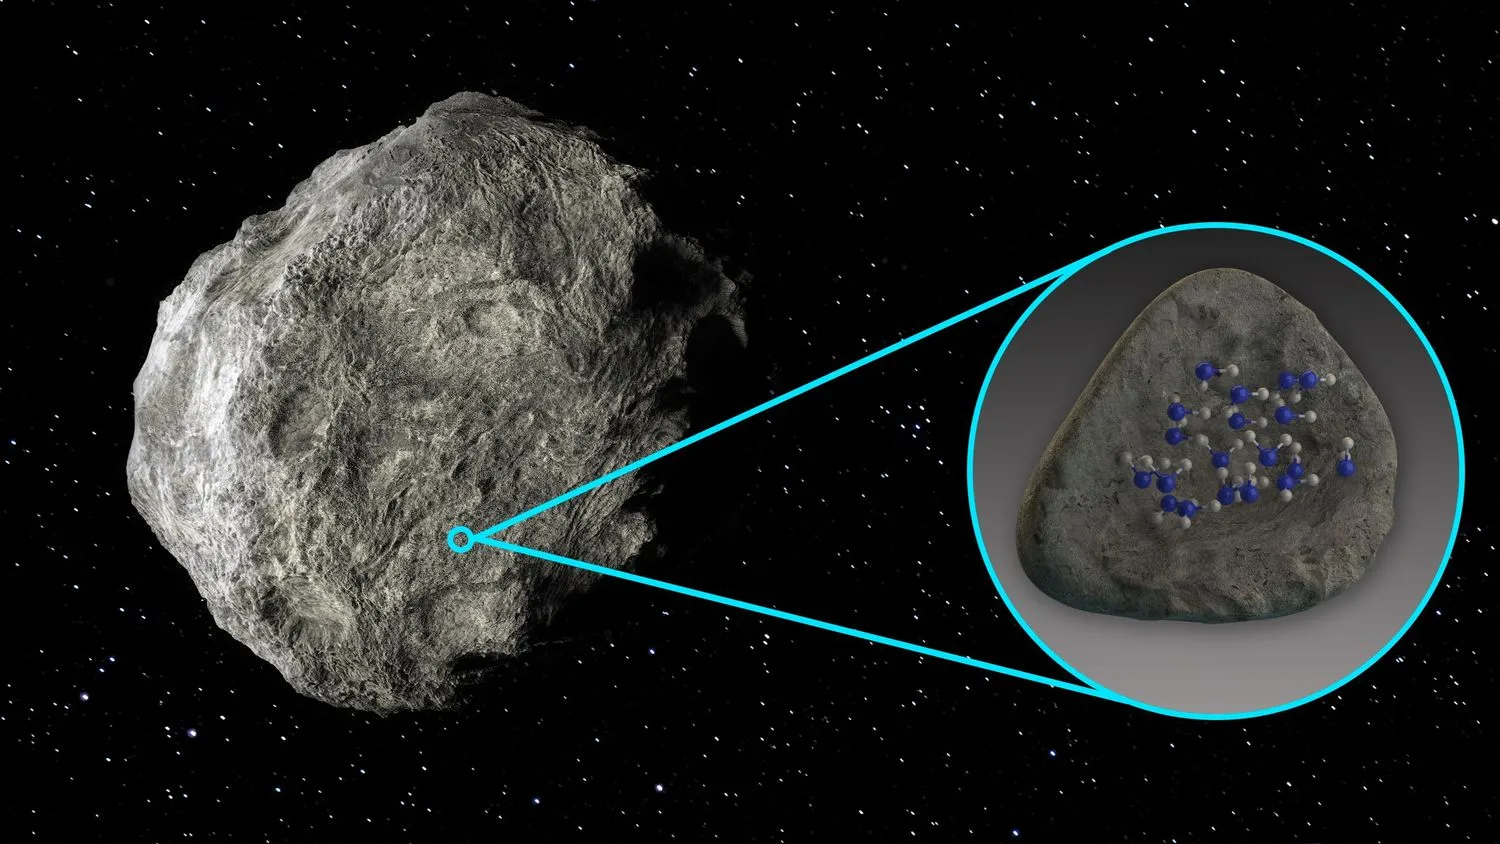 auf der linken Seite, die die Hälfte des Bildes einnimmt, hängt ein großer Asteroid im Weltraum. auf der rechten Seite dient ein blauer Kreis als Vergrößerungsfläche mit blauen Linien, die tangential von oben und unten an seinem Umfang verlaufen und auf einem kleineren Kreis auf dem Asteroiden zusammenlaufen. im blauen Kreis befindet sich ein glatter grauer Felsen mit blauen und weißen Punkten darauf.